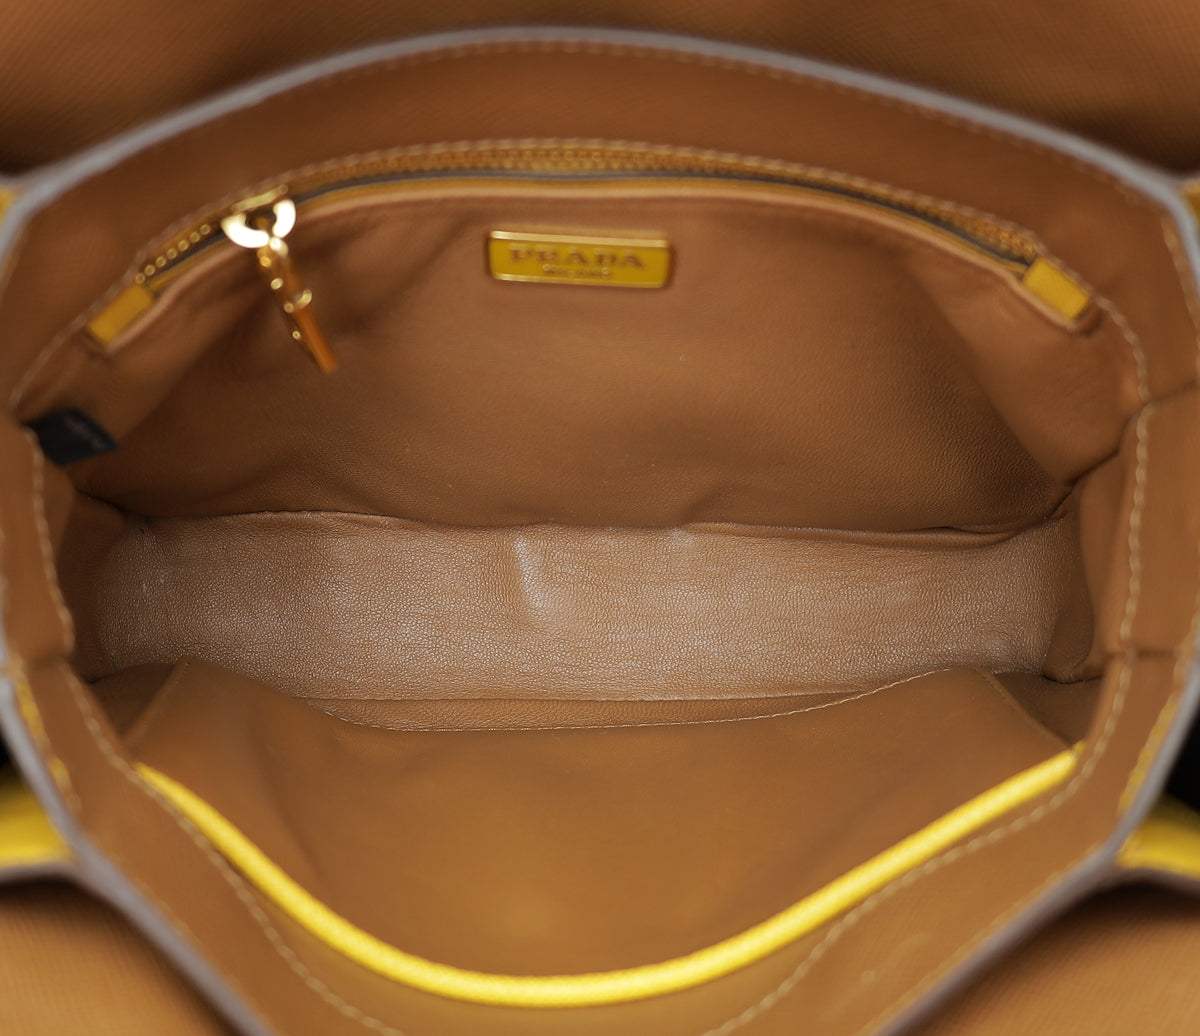 Prada Bicolor Turn Lock Shoulder Bag